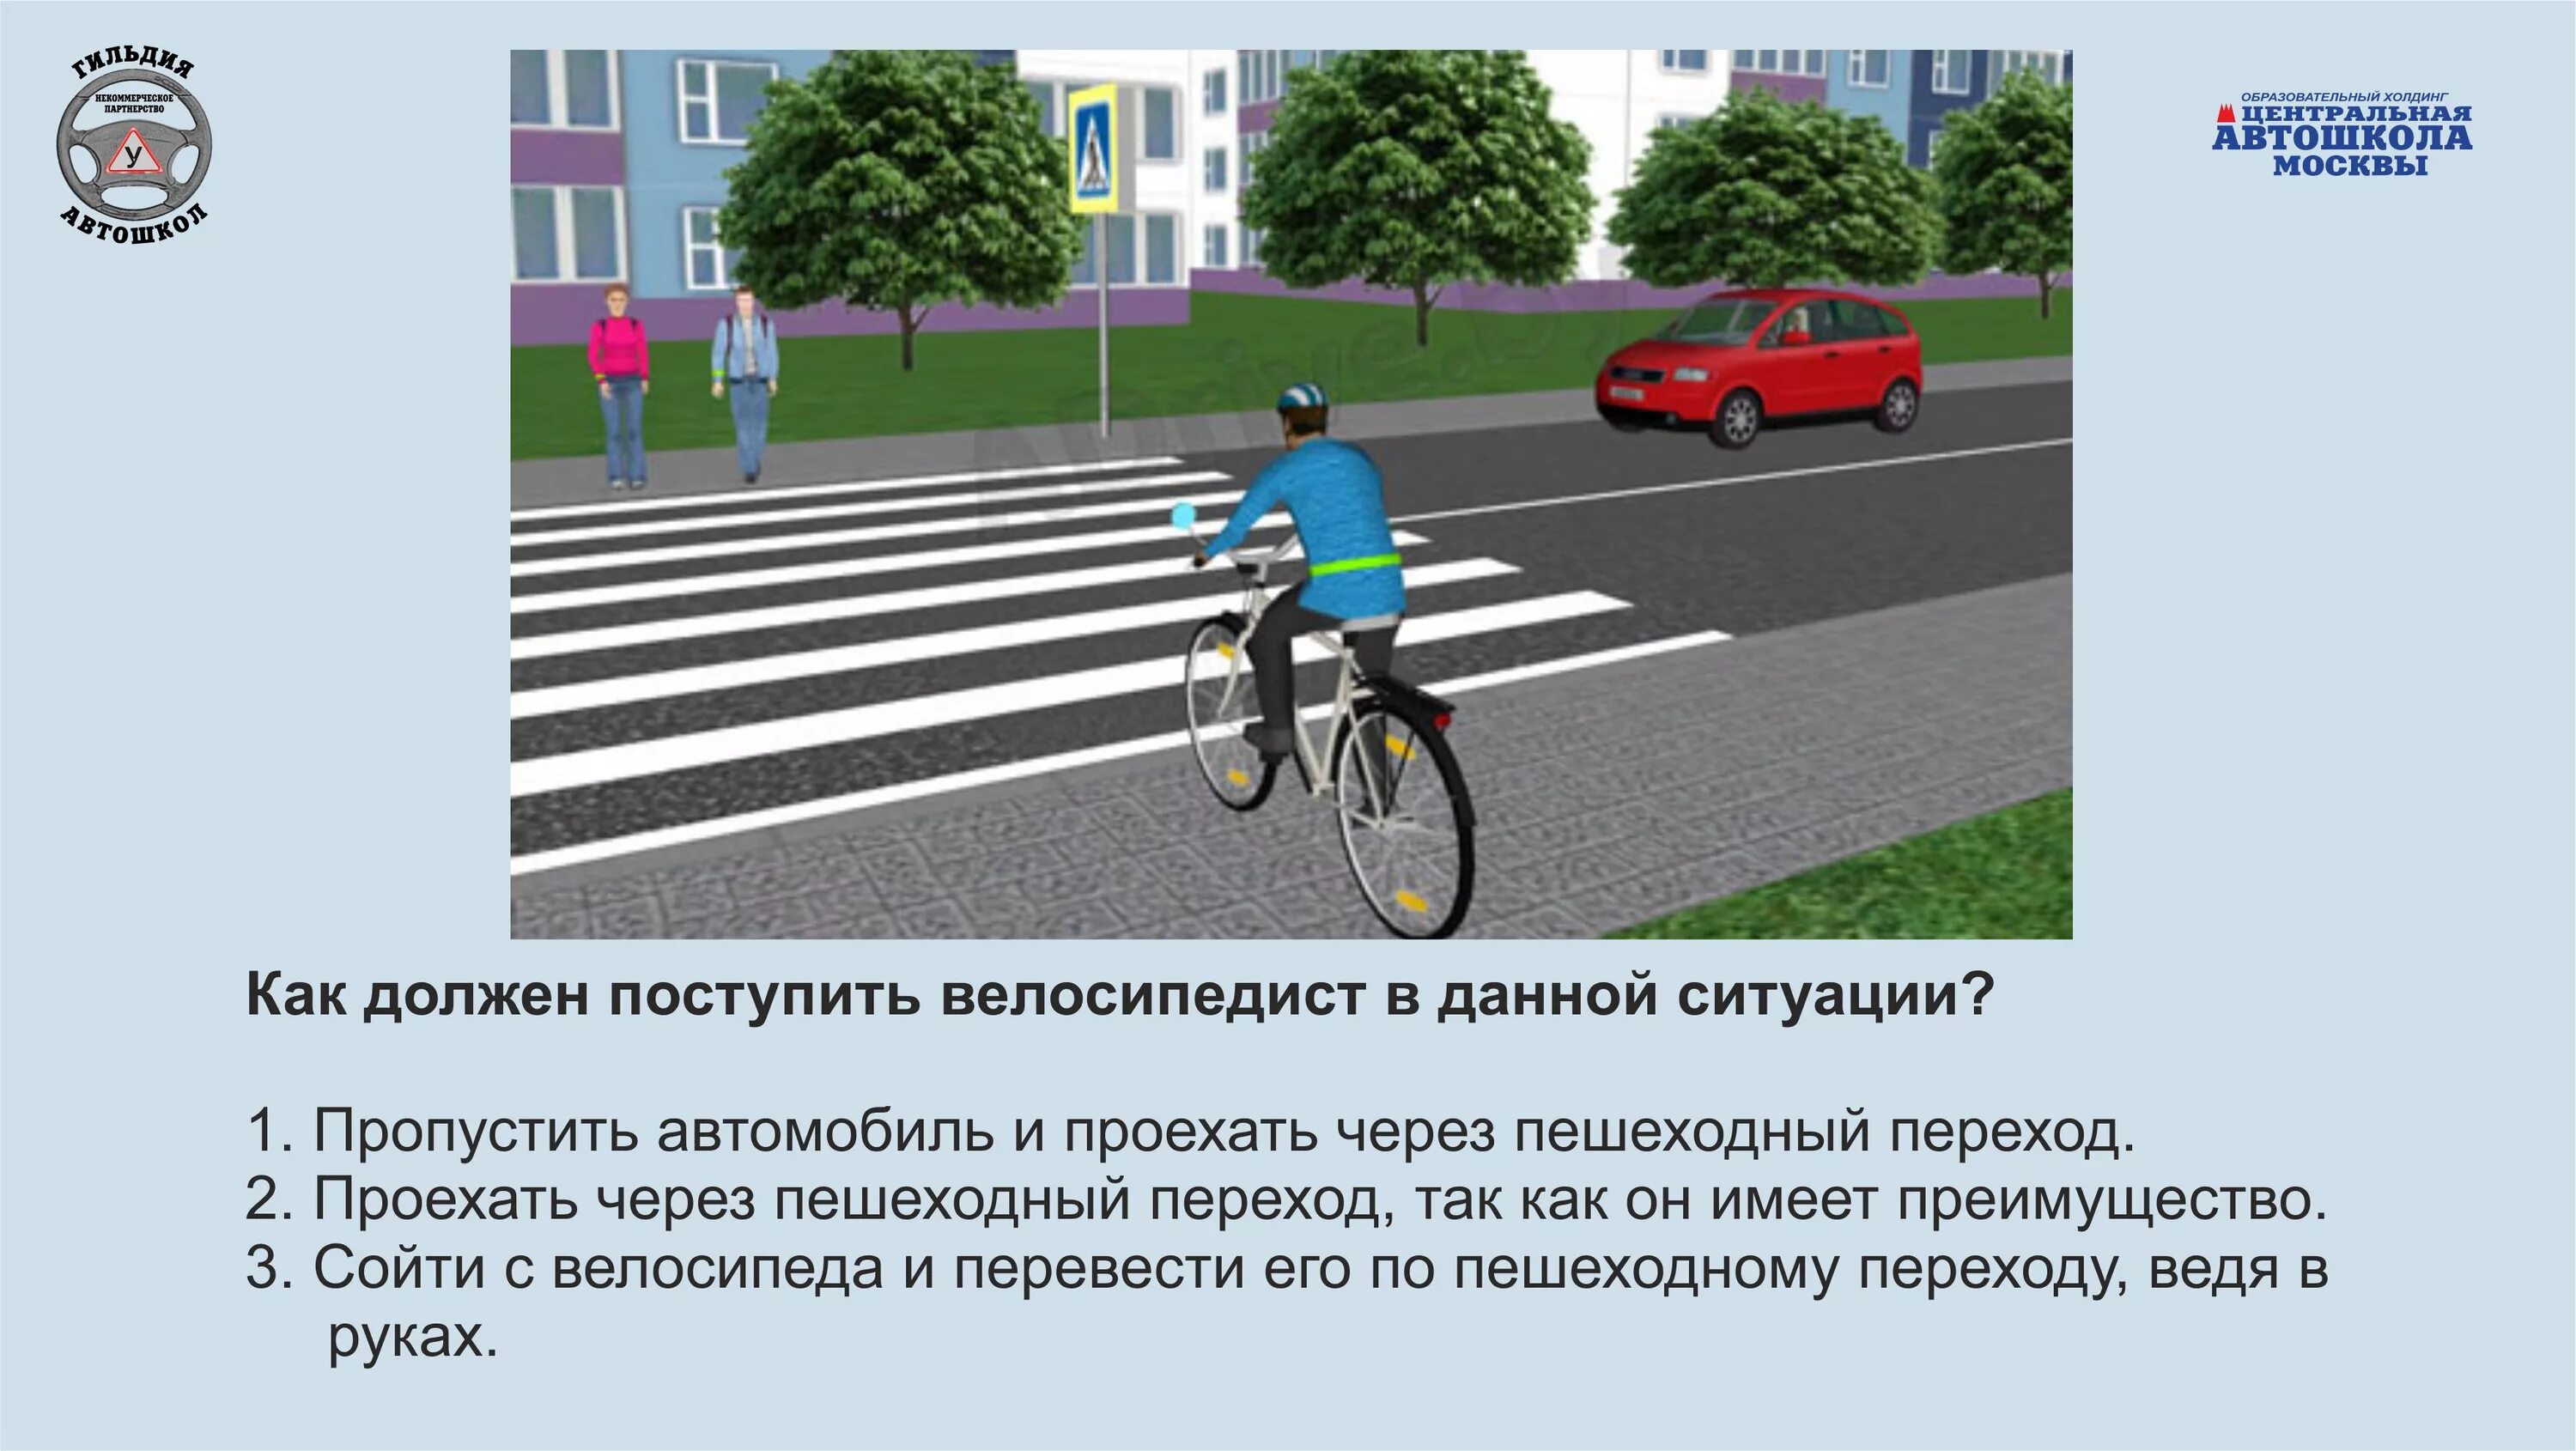 Велосипедист по пешеходному переходу должен. ПДД для пешеходов и велосипедистов. Дорожные ситуации для велосипедистов. ПДД для велосипедистов. Правило дорожного движения для велосипедистов.